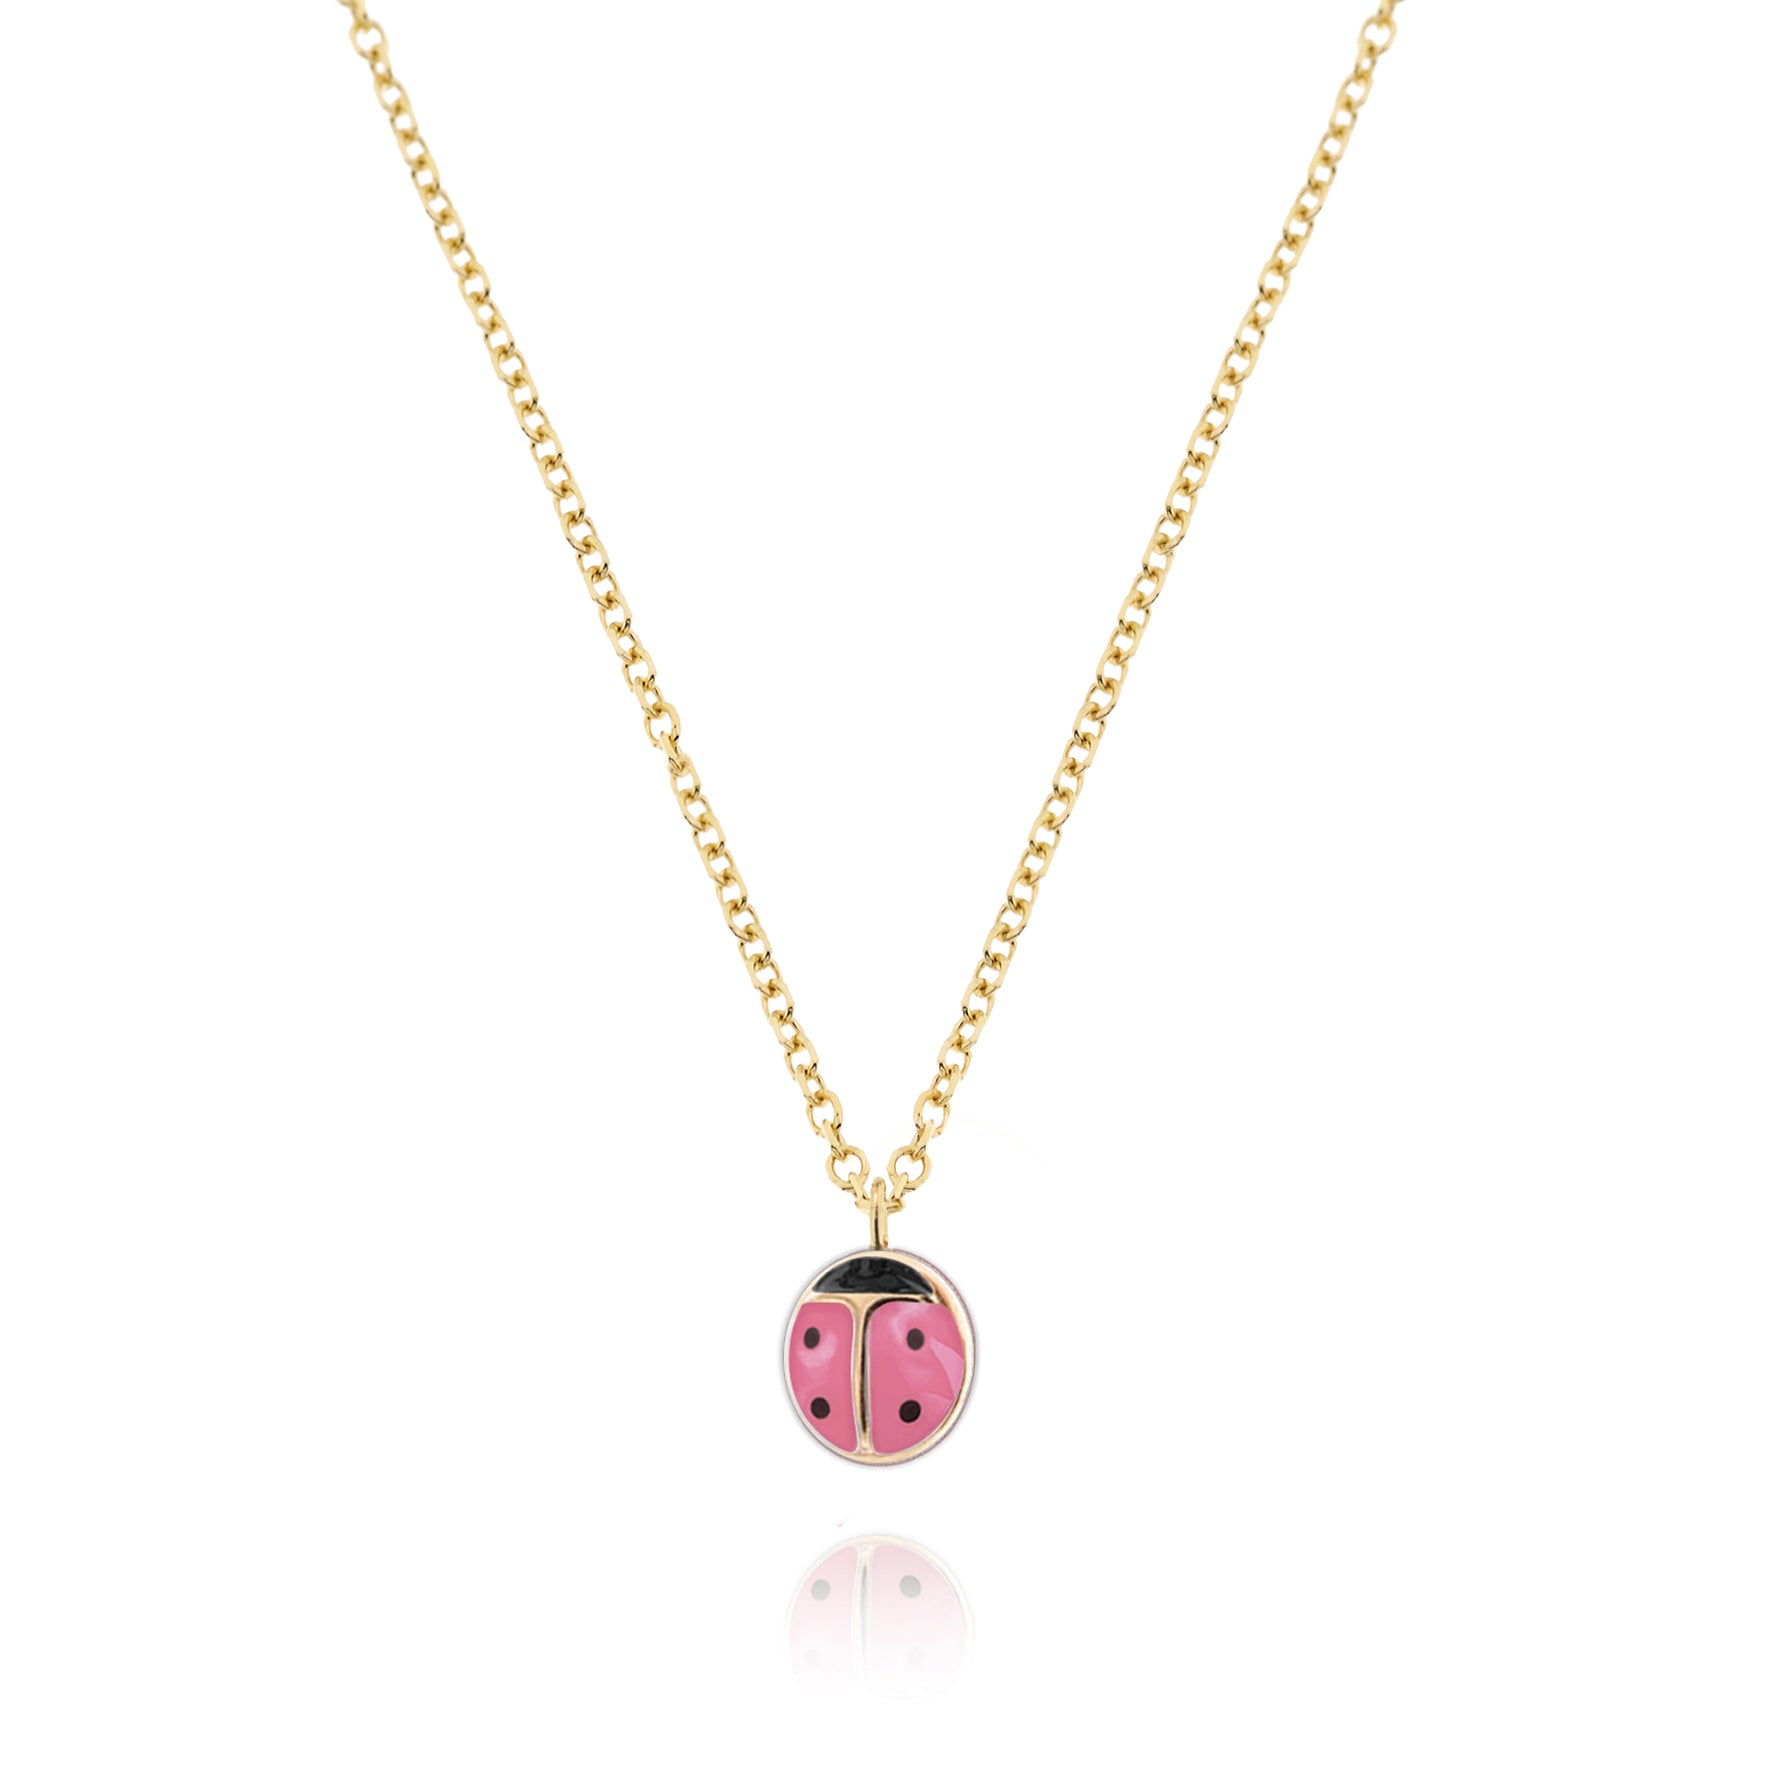 Jewels, $1300 at tiffany.com - Wheretoget | Tiffany & co., Ladybug jewelry,  Jewels